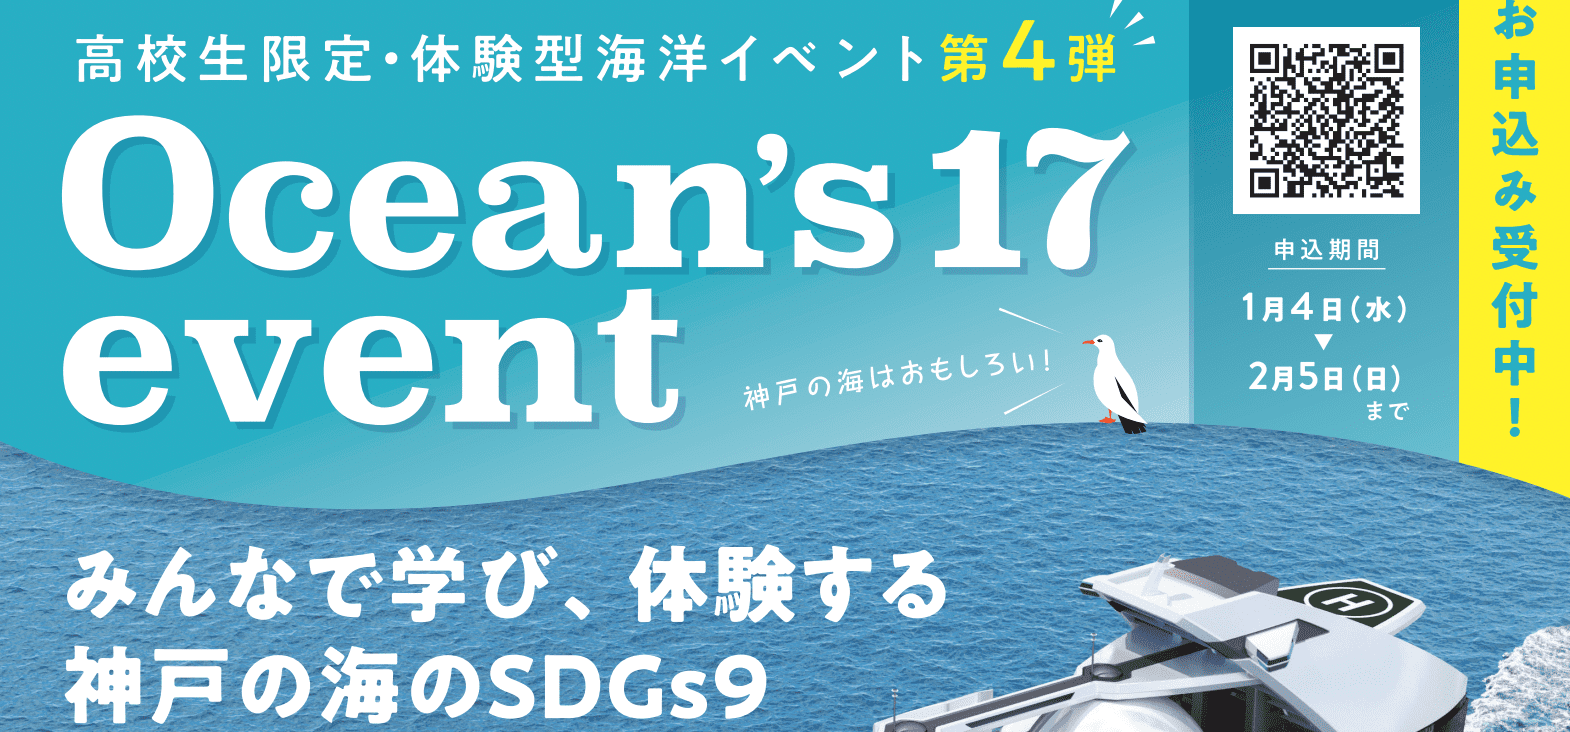 【高校生限定・SDGs×体験型海洋イベント】Ocean’s 17 event -4th-